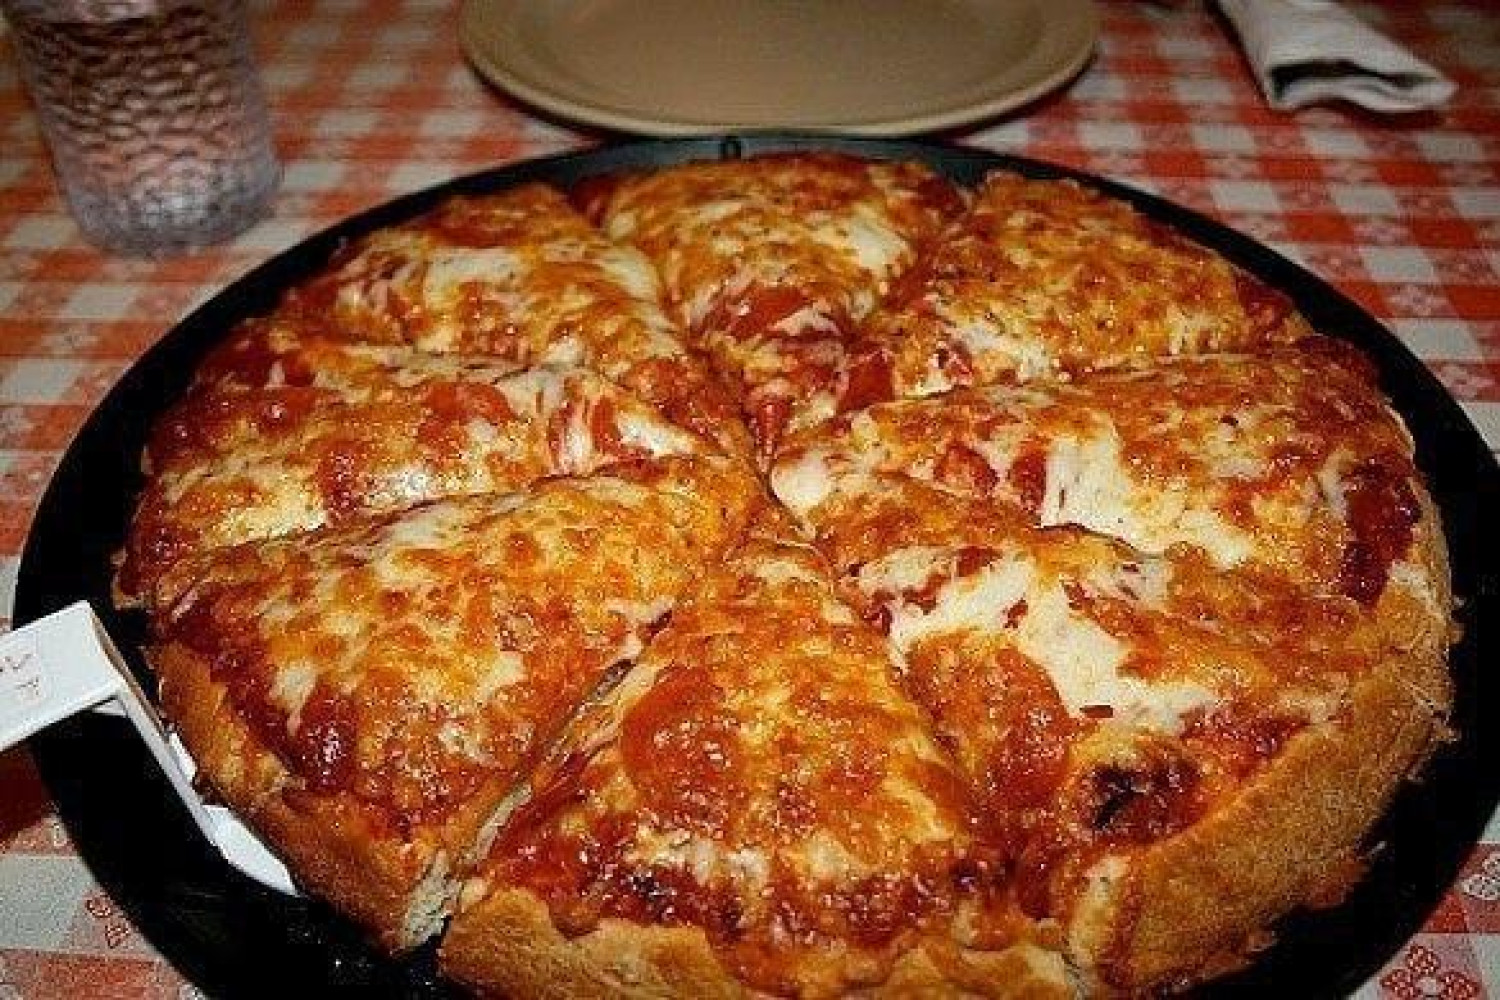 A leggyorsabb serpenyős pizza - 10 perc alatt elkészül